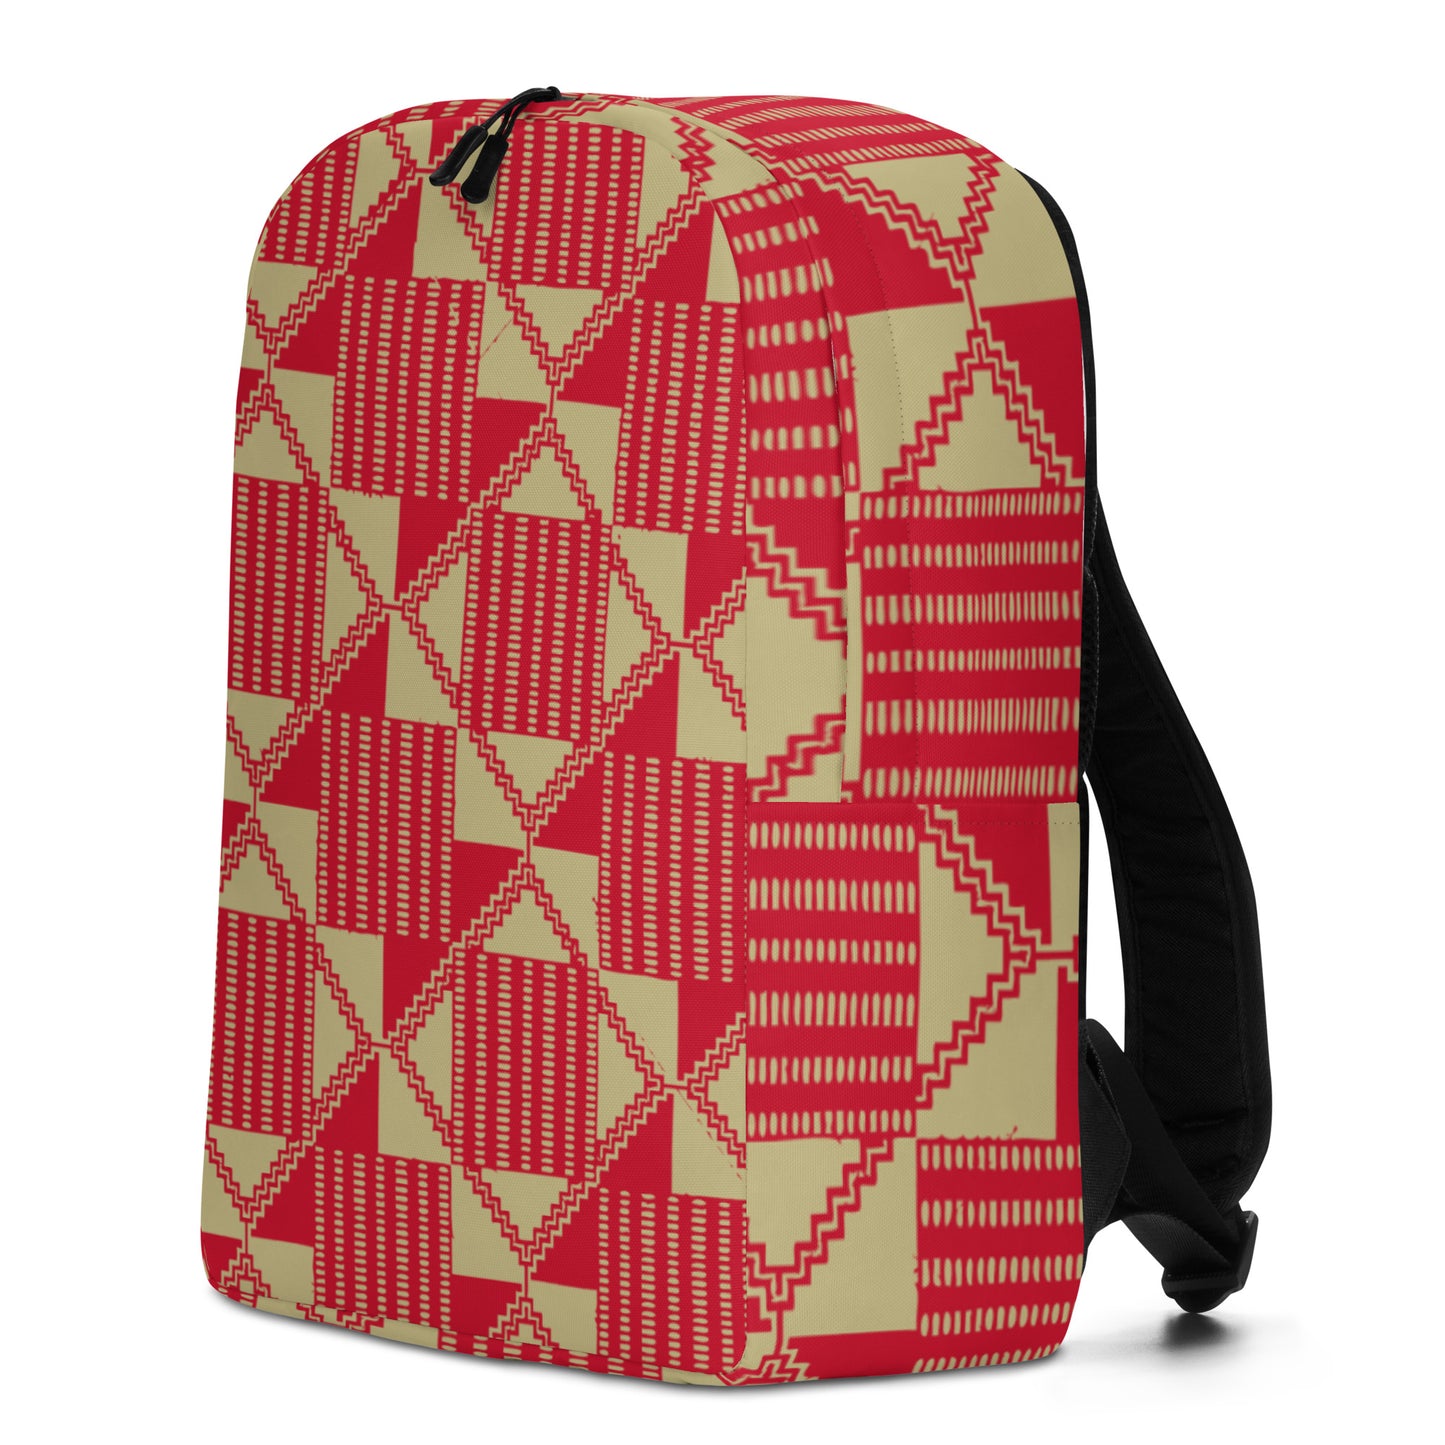 AZONTO Minimalist Backpack